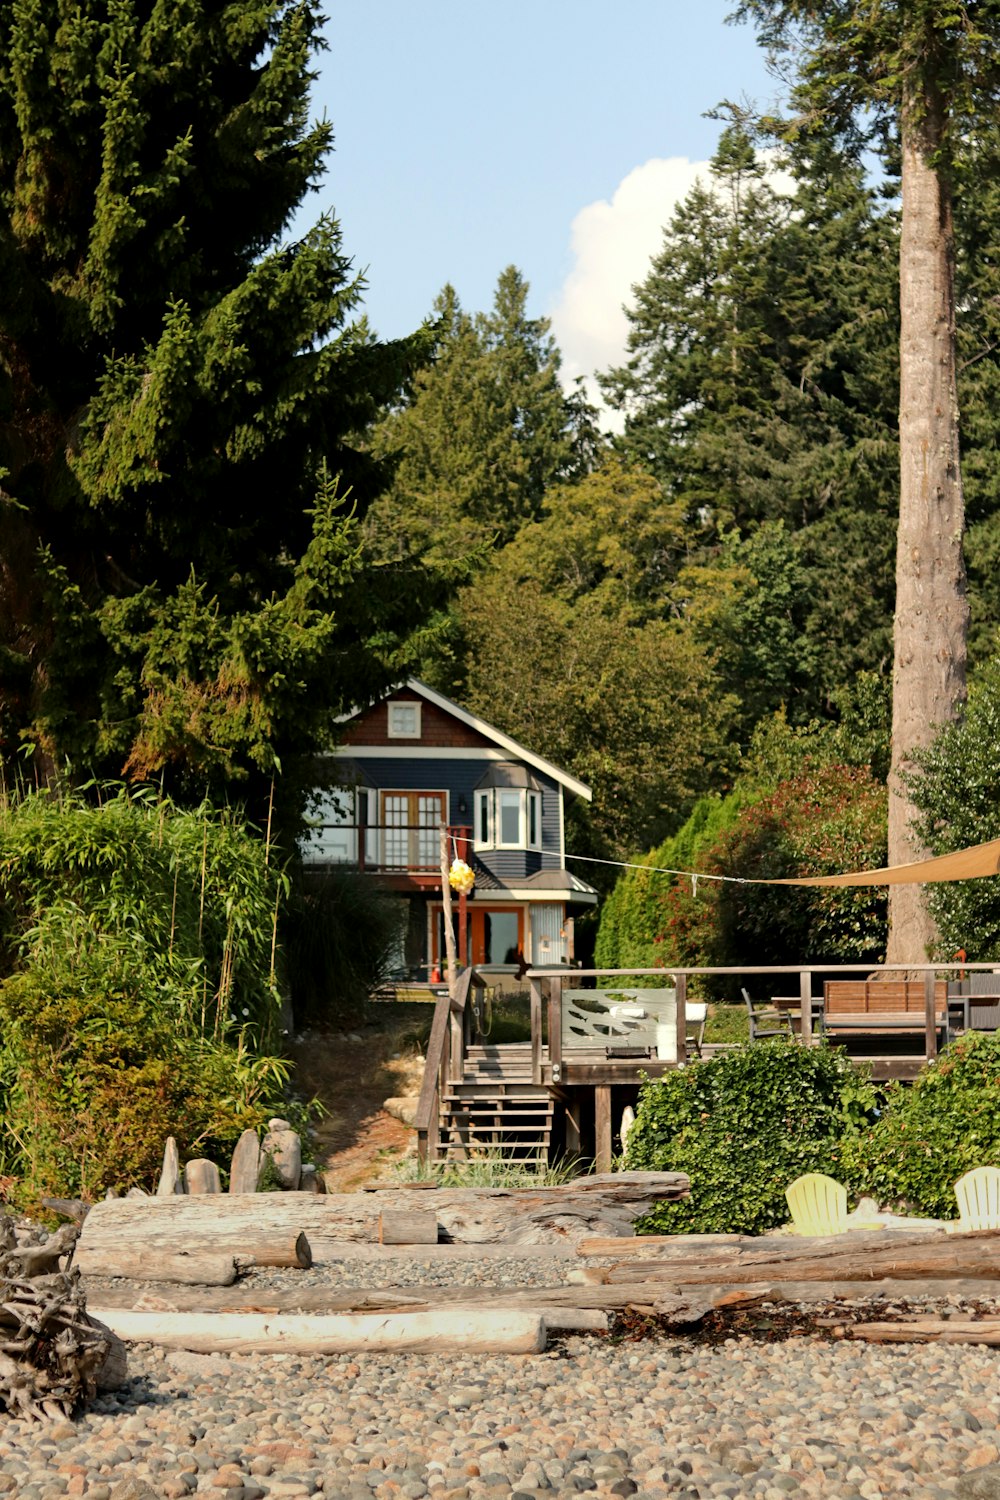 Maison en bois brun près d’arbres verts pendant la journée